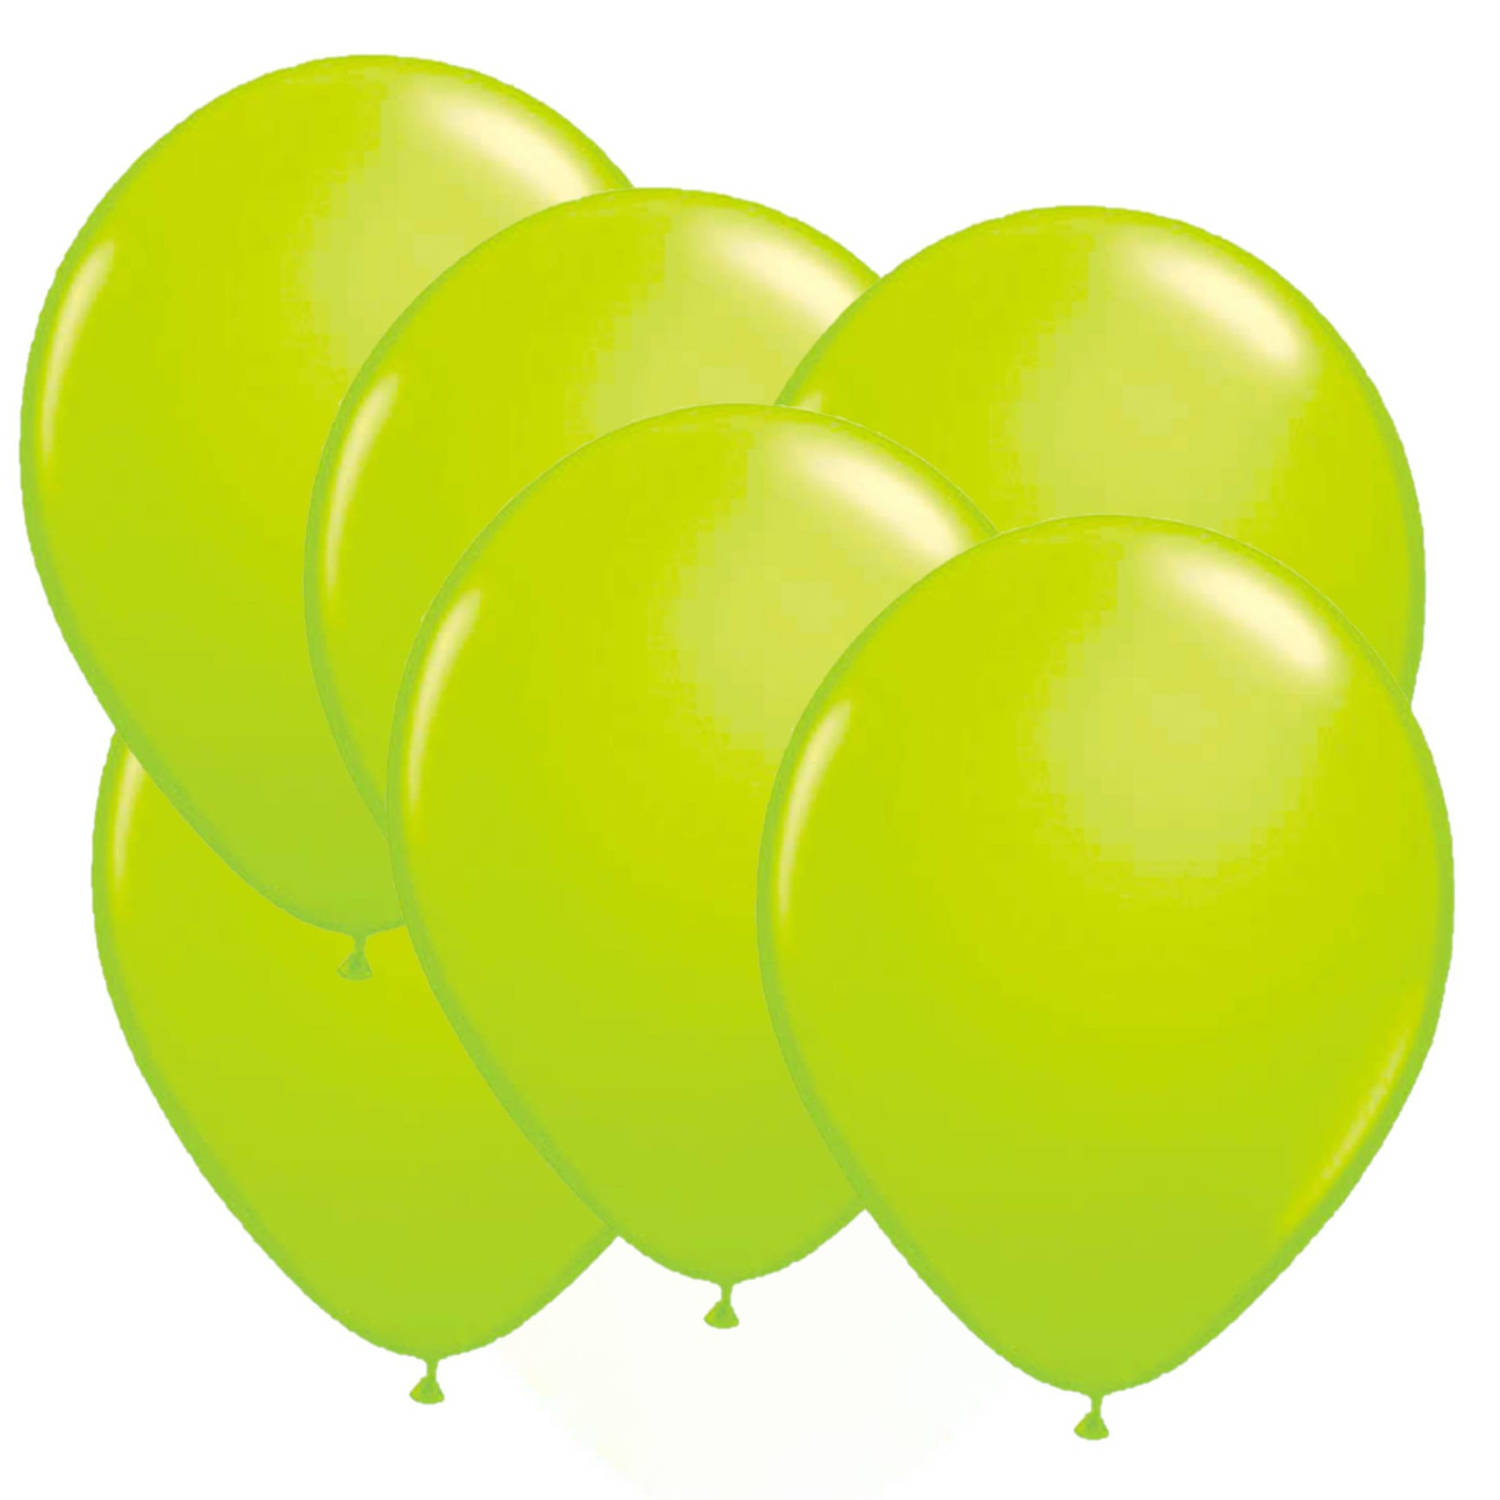 32x stuks Neon fel groene latex ballonnen 25 cm - Ballonnen